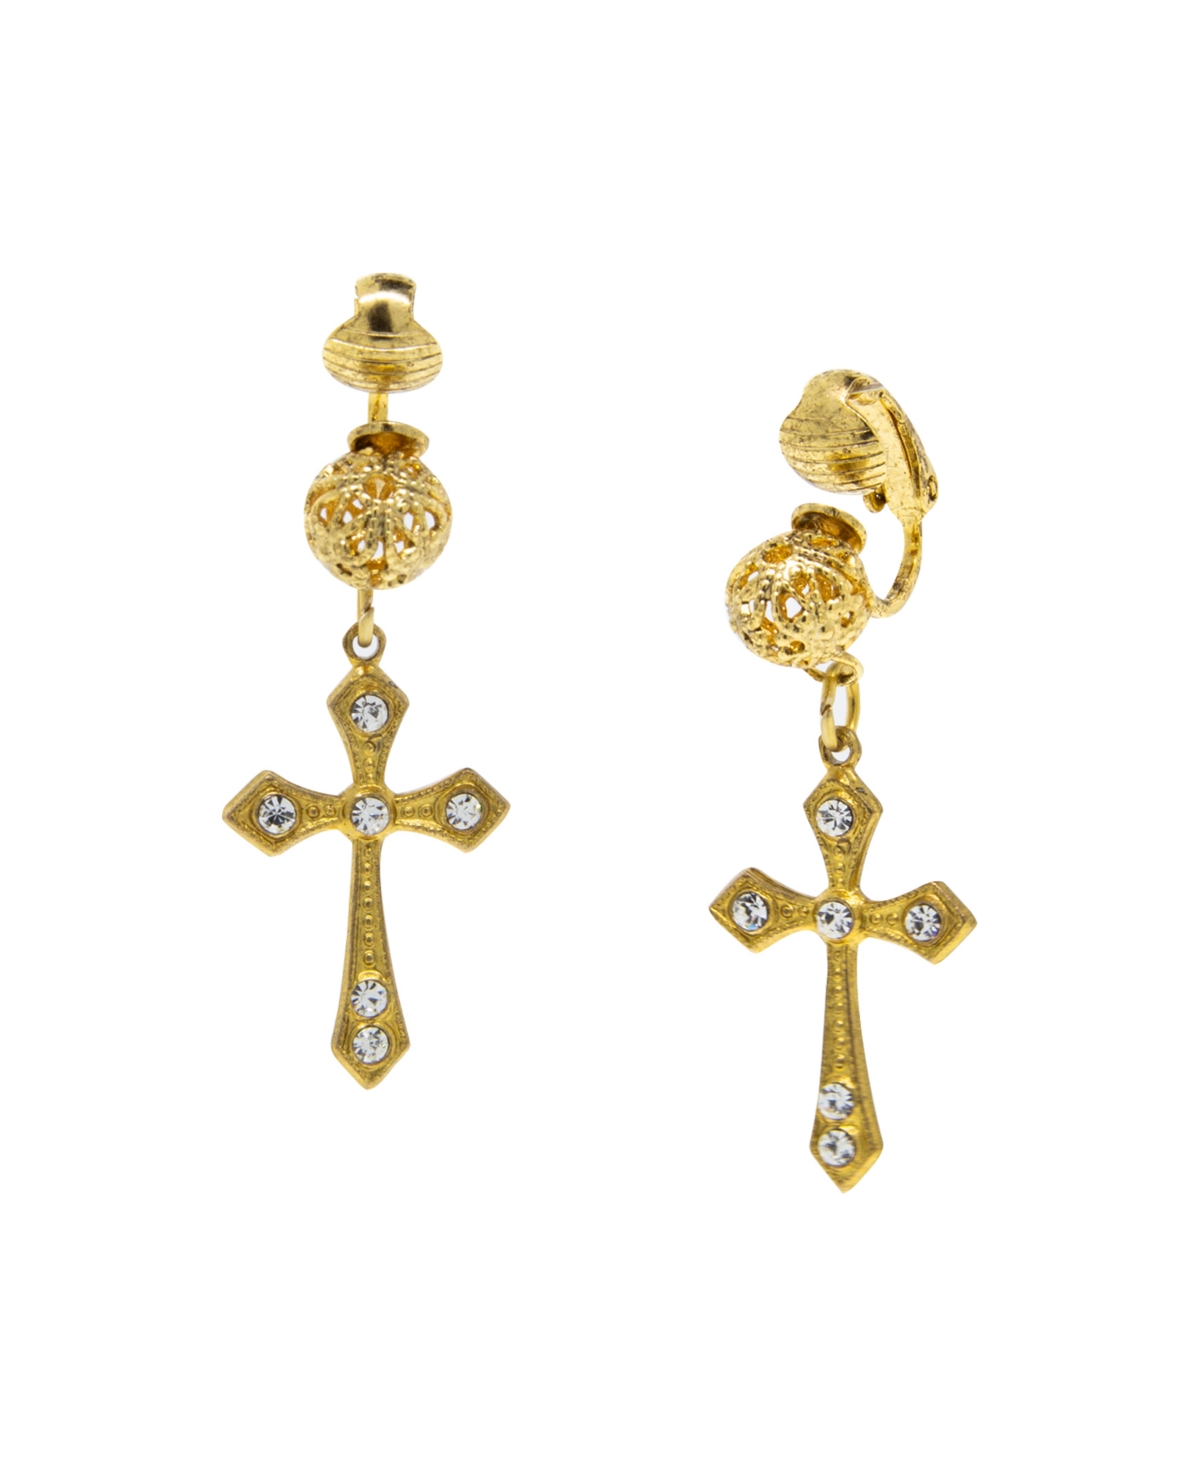 14K Gold Dipped Crystal Cross Clip Earrings - White